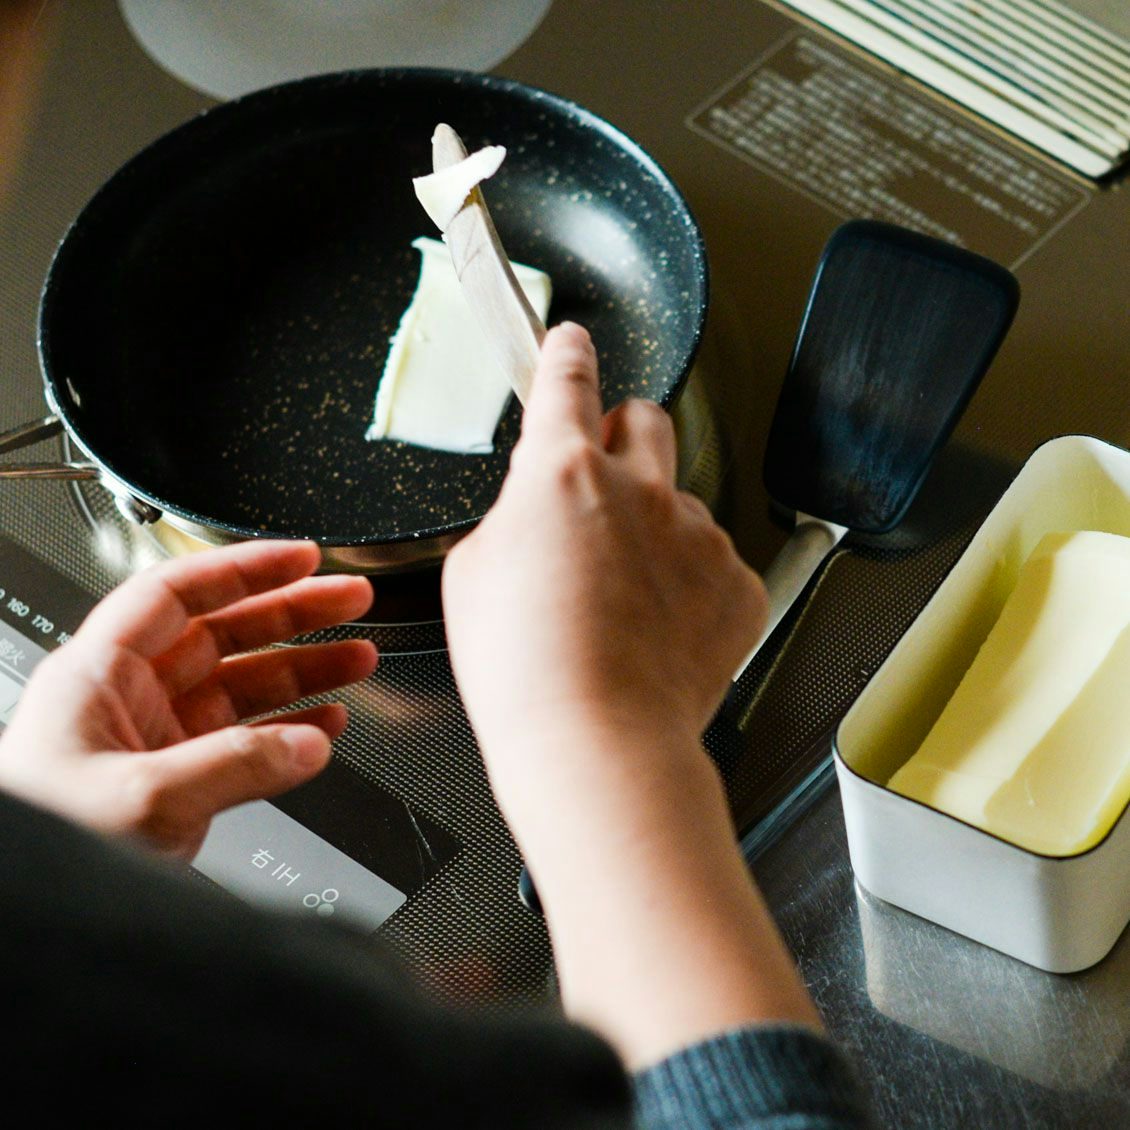 バタートーストをフライパンで作る バター染み込むとびきりレシピ 北欧 暮らしの道具店